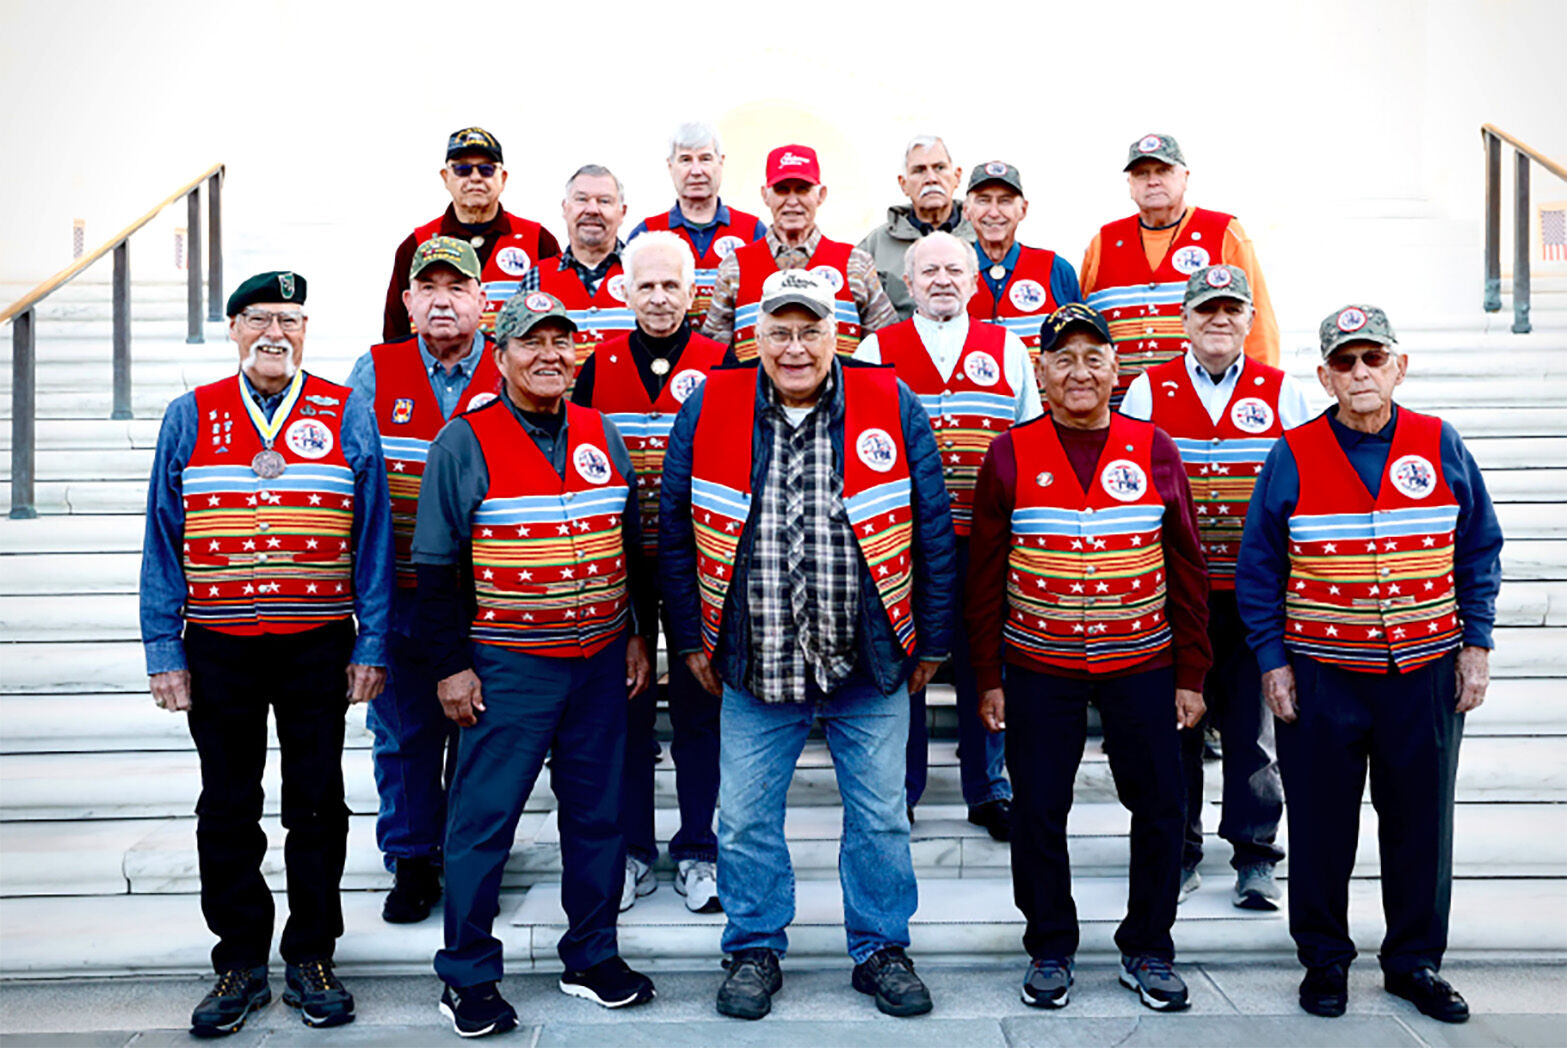 Chickasaw Elder Veterans visit D.C. memorials during Veterans Day